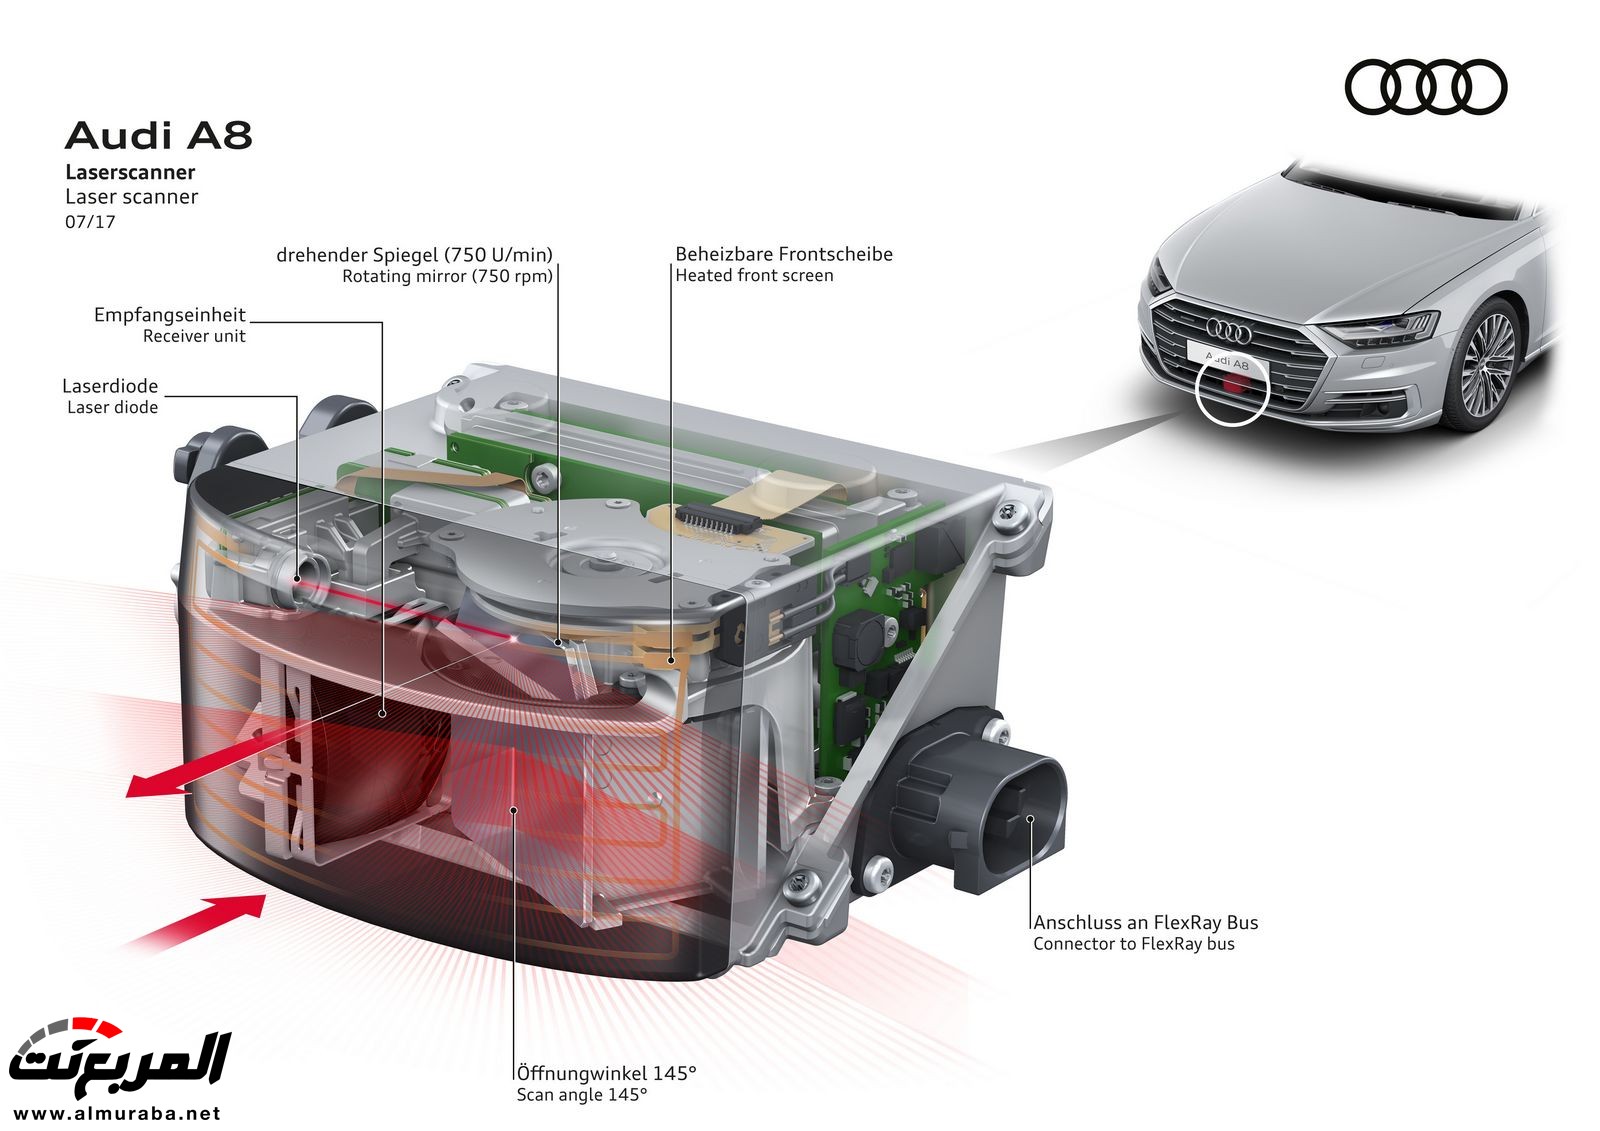 أودي A8 2018 الجديدة كلياً تكشف نفسها بتصميم وتقنيات متطورة "معلومات + 100 صورة" Audi A8 79